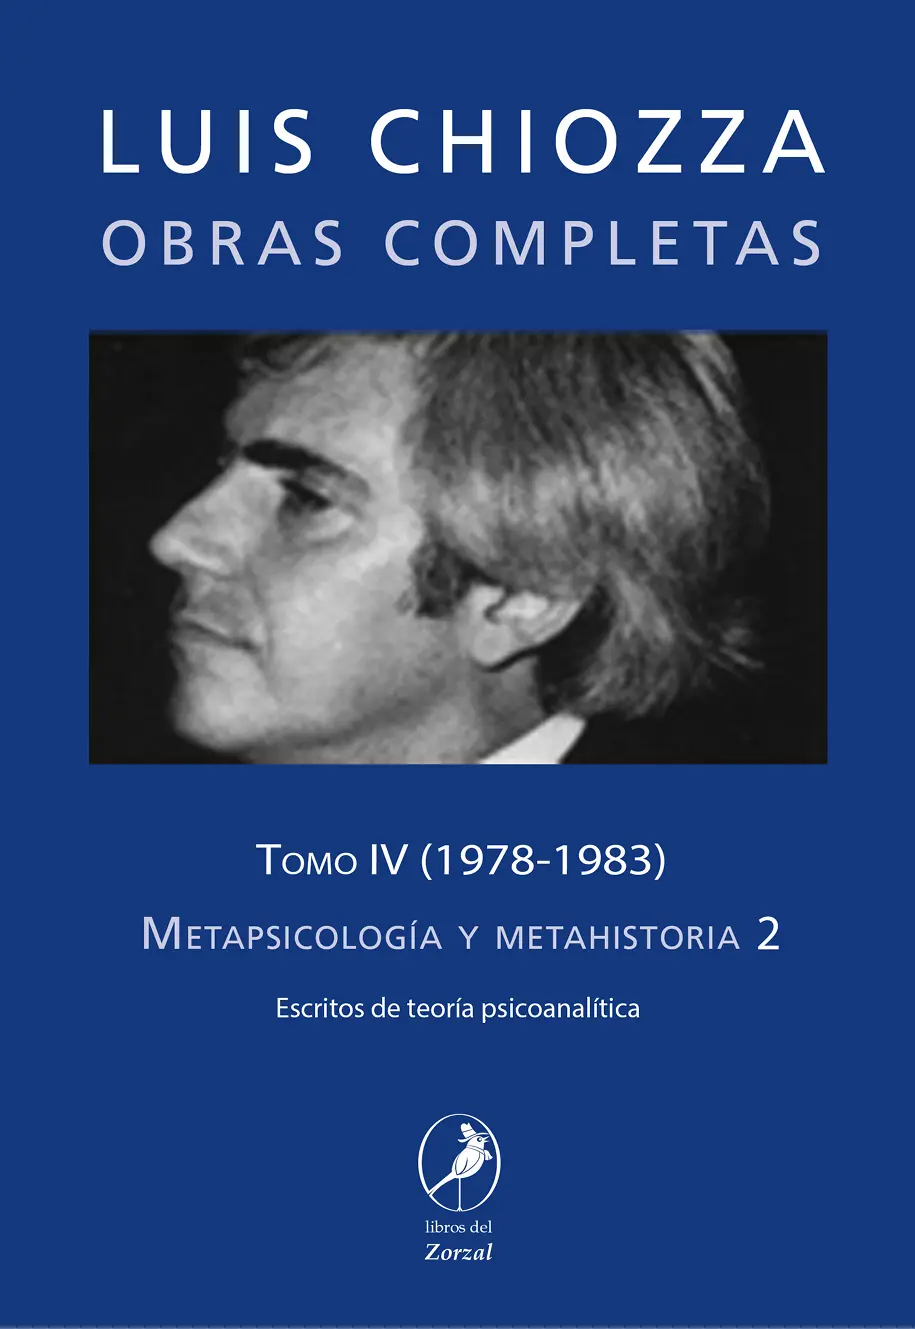 Luis Chiozza OBRAS COMPLETAS Tomo IV Metapsicología y metahistoria 2 Escritos - фото 1